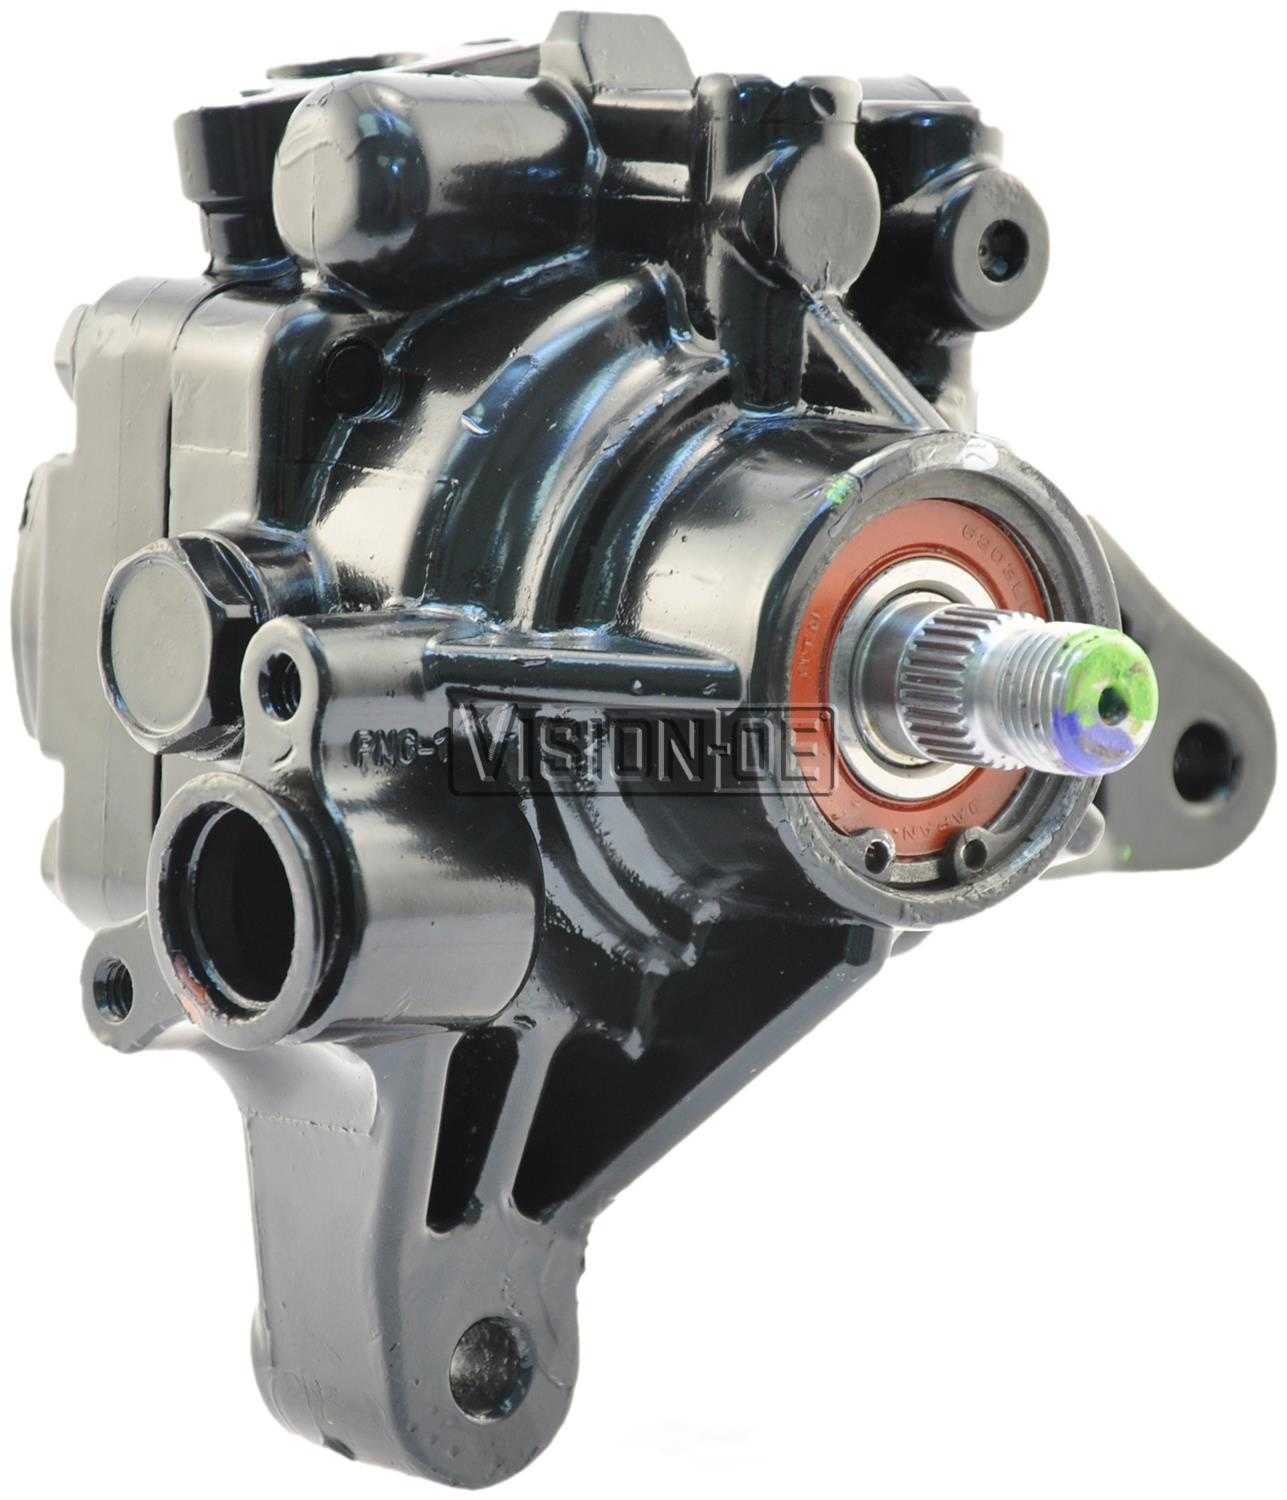 VISION-OE - Reman Power Steering Pump - VOE 990-0521